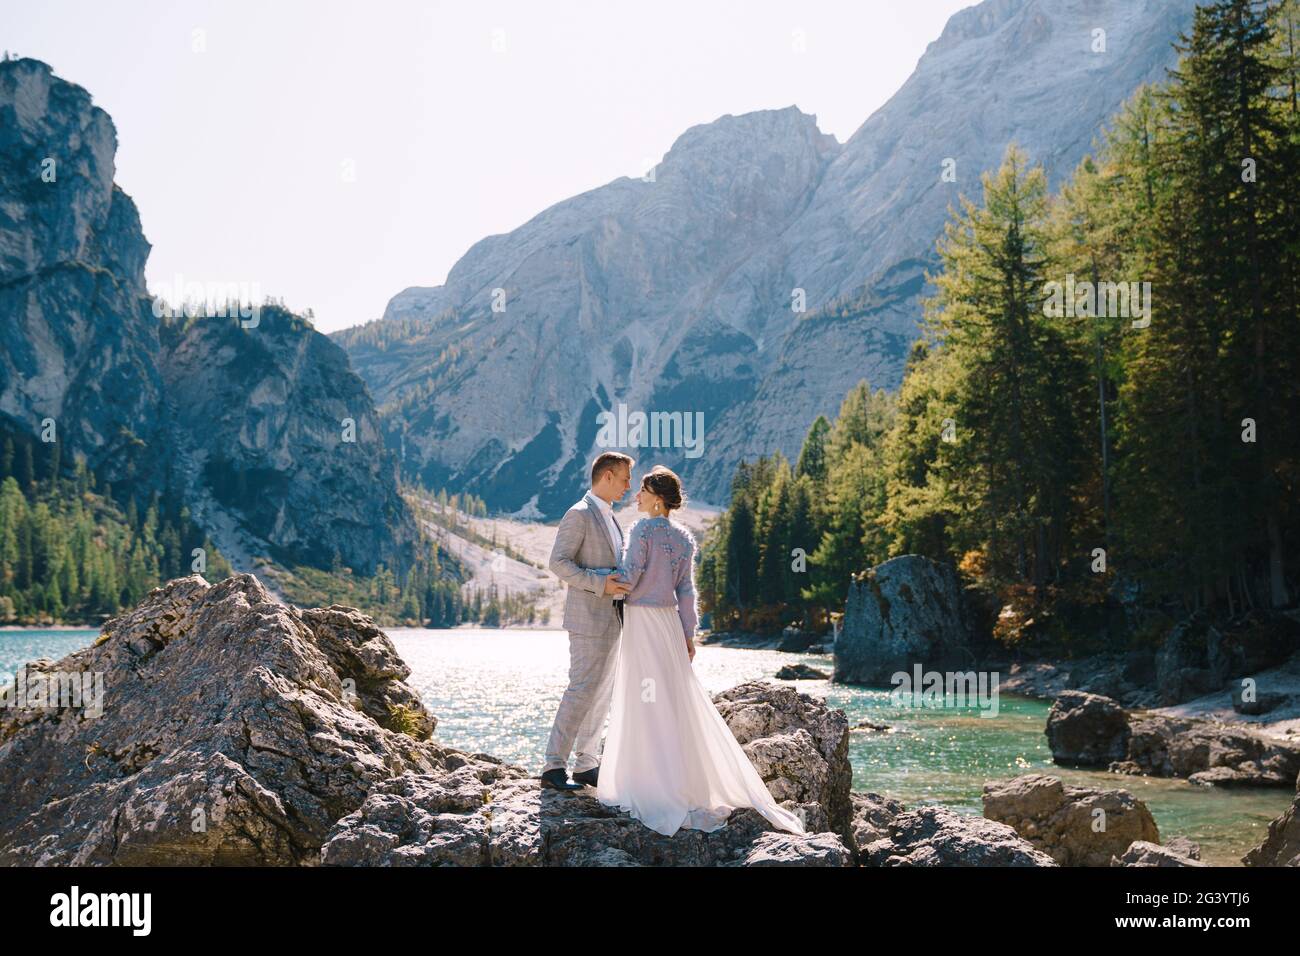 La mariée et le marié sont debout sur des pierres surplombant le Lago di Braies en Italie. Mariage de destination en Europe, sur Braies lak Banque D'Images